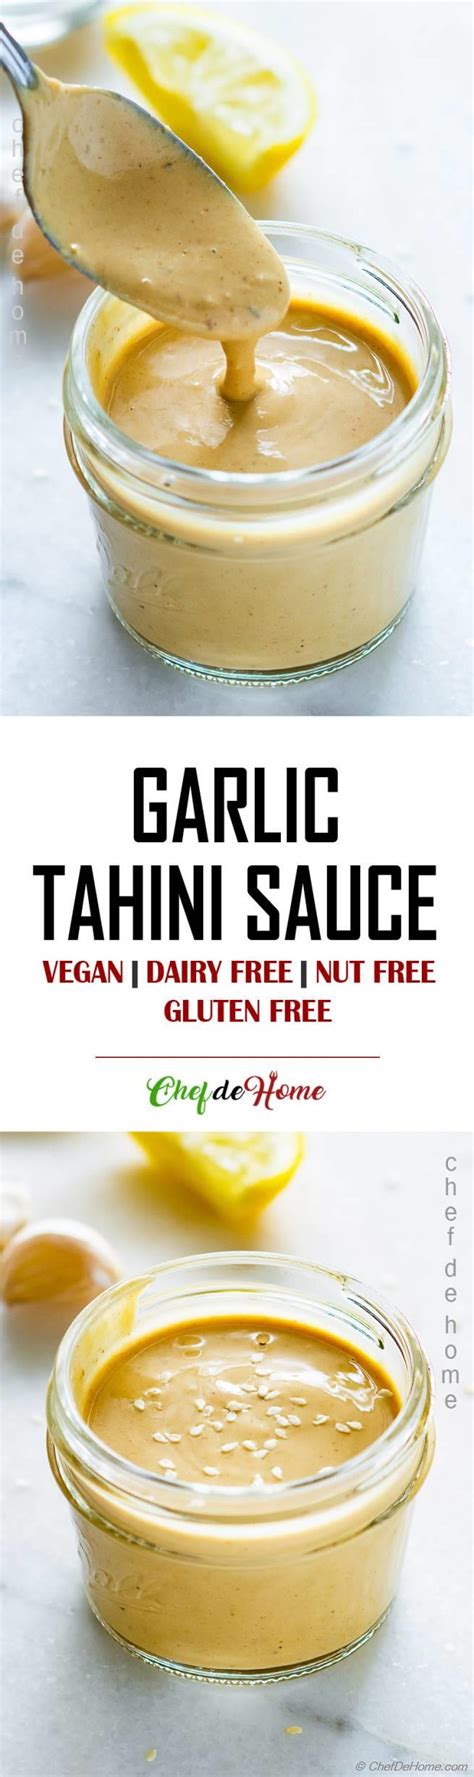 Tahini Sauce Recipe Chefdehome Com